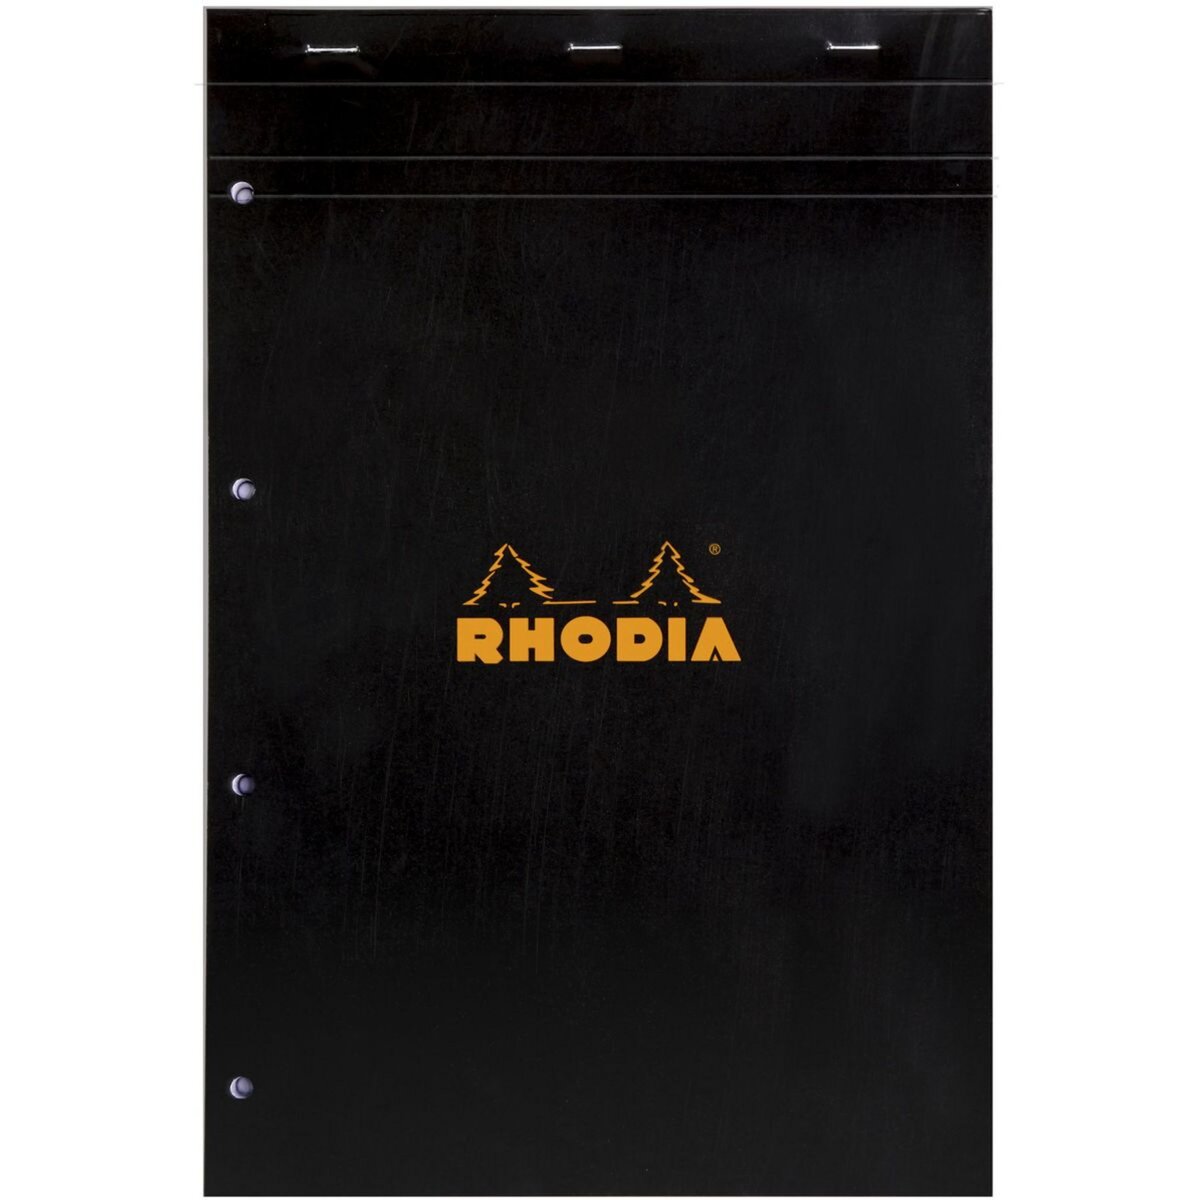 RHODIA Bloc note perforé 4 trous 21x31,8cm 160 pages petits carreaux 5x5 noir